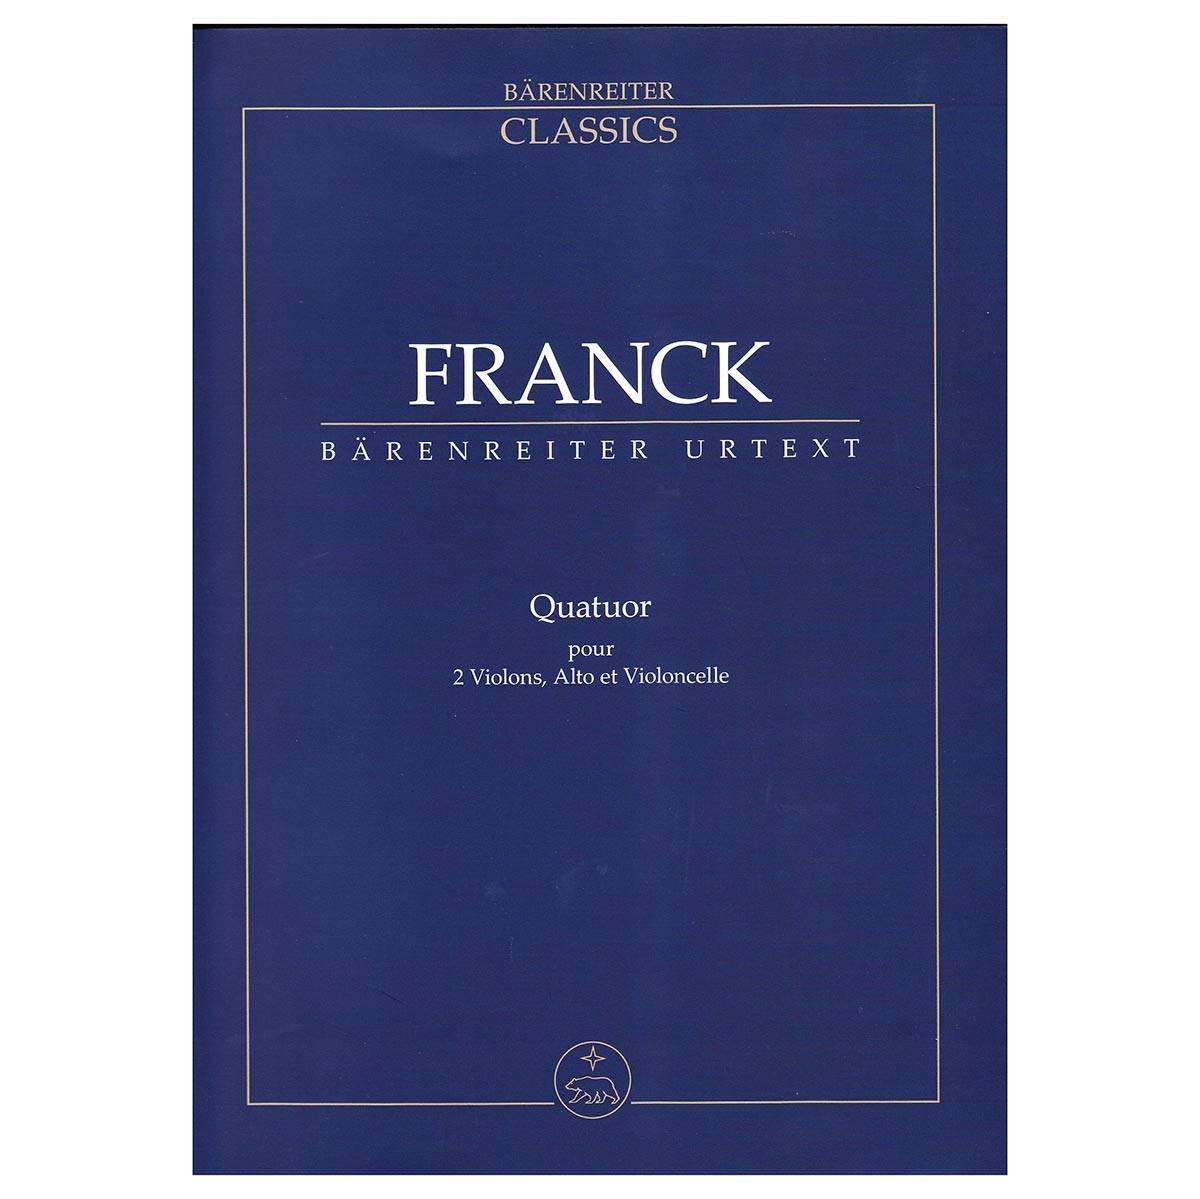 Franck - Quatuor [Pocket Score]